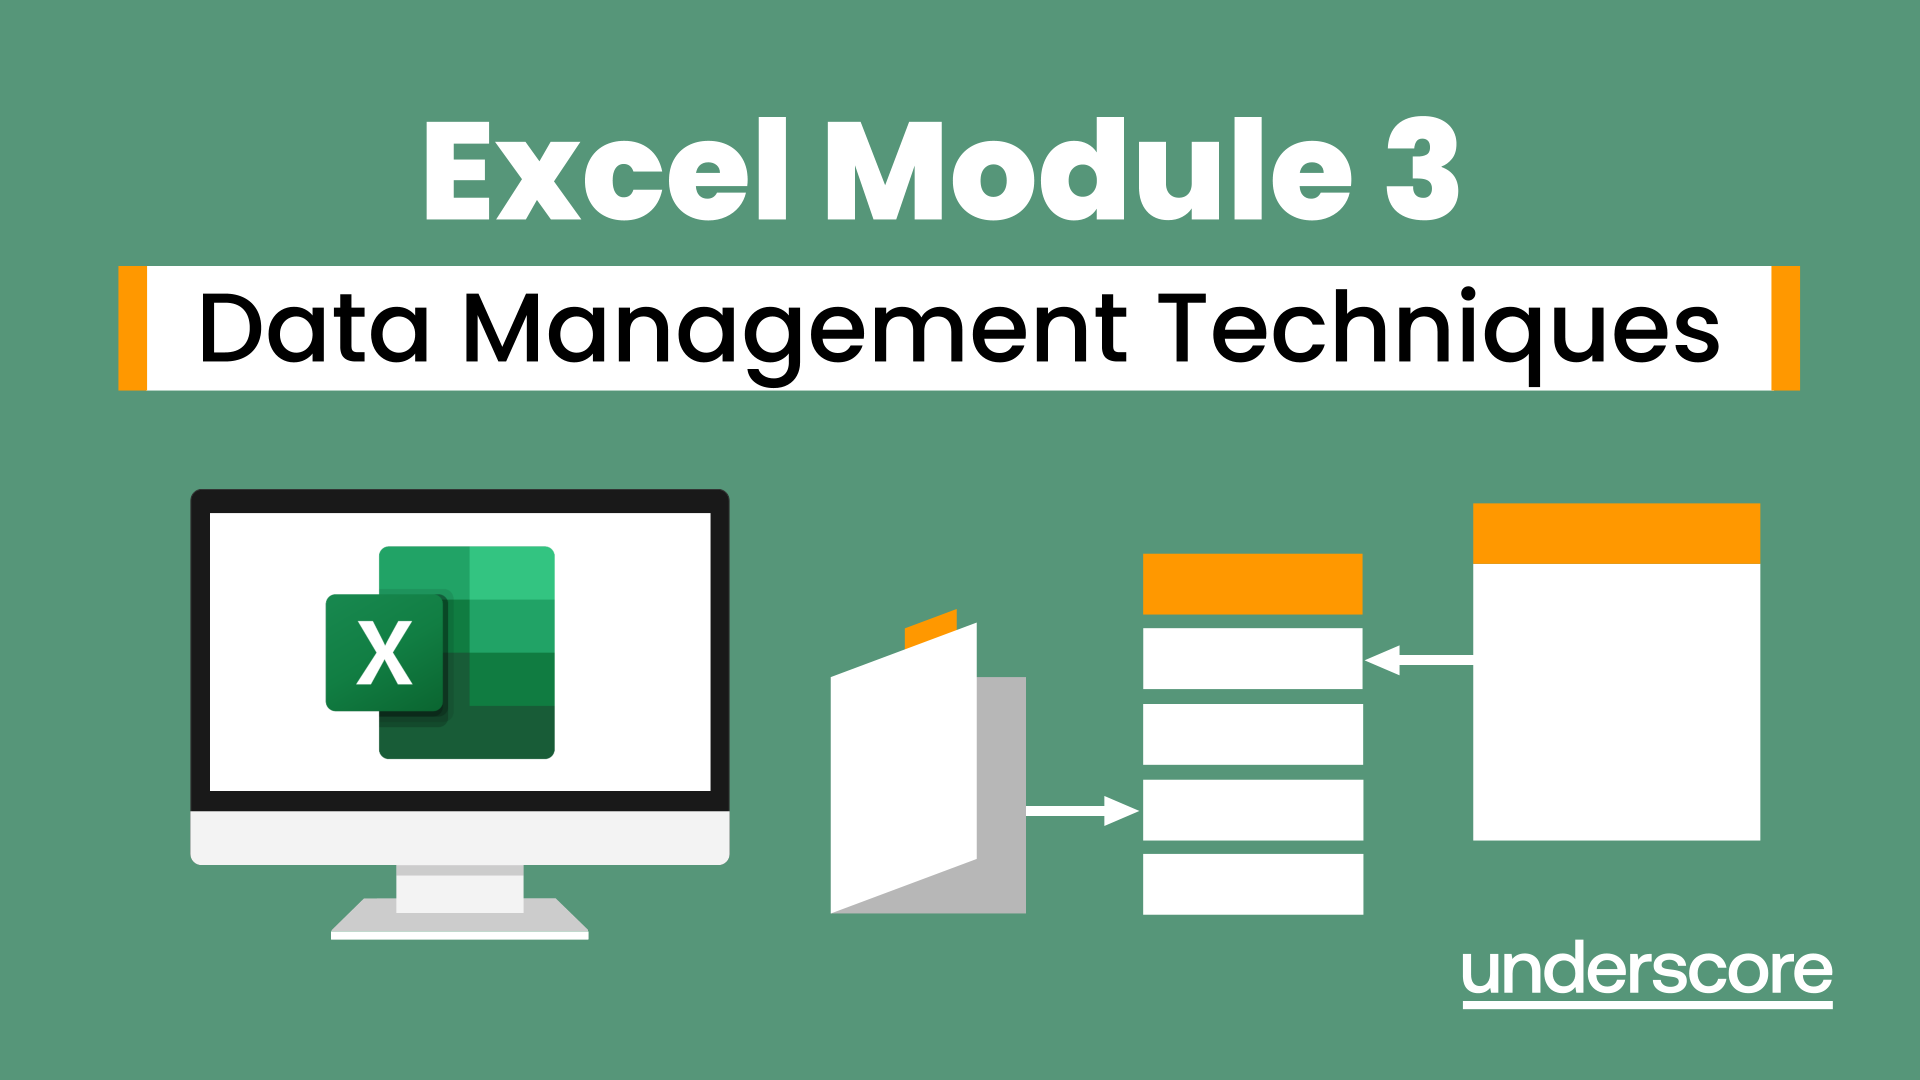 Excel Module 3 – Data Management Techniques